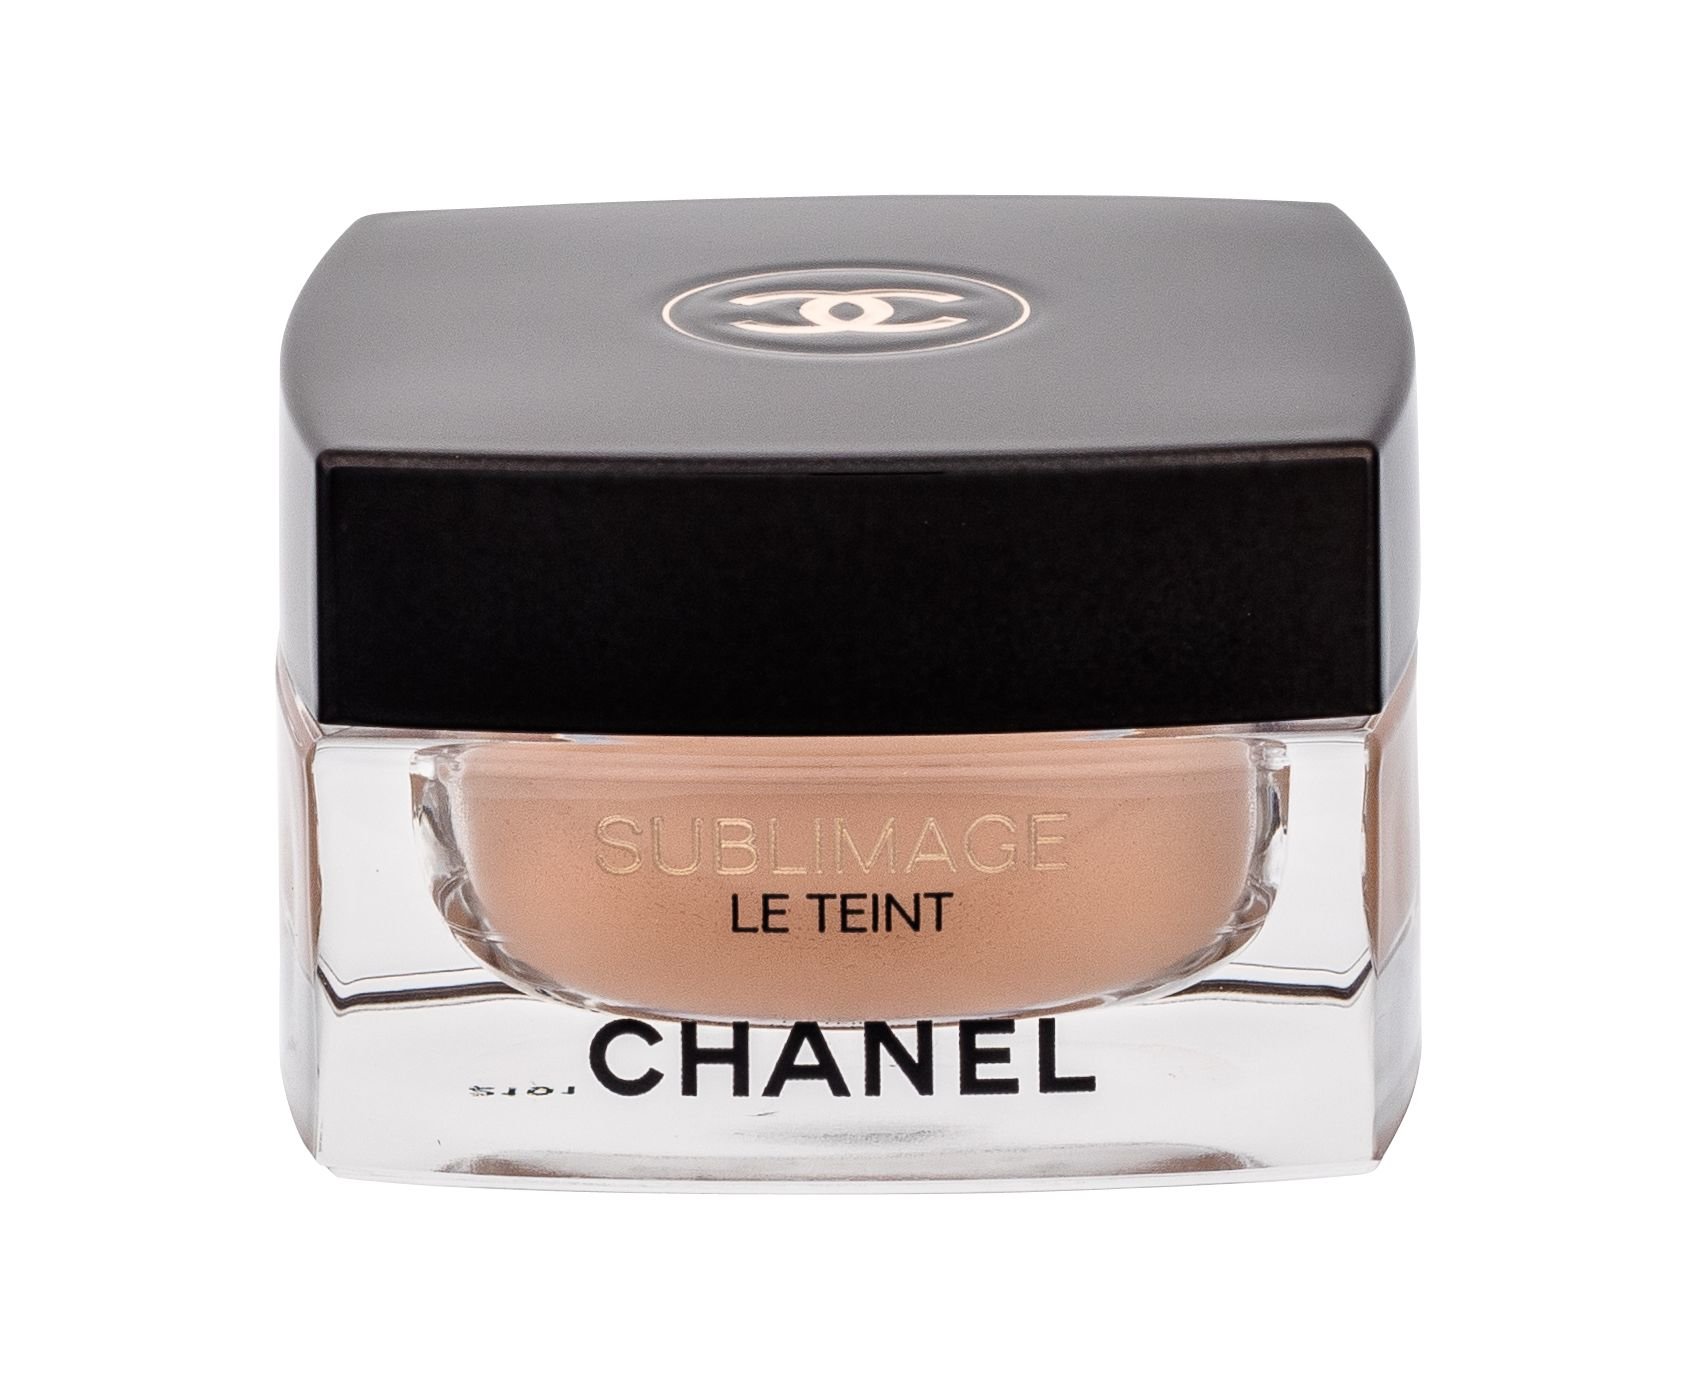 Chanel Sublimage Le Teint 30g makiažo pagrindas